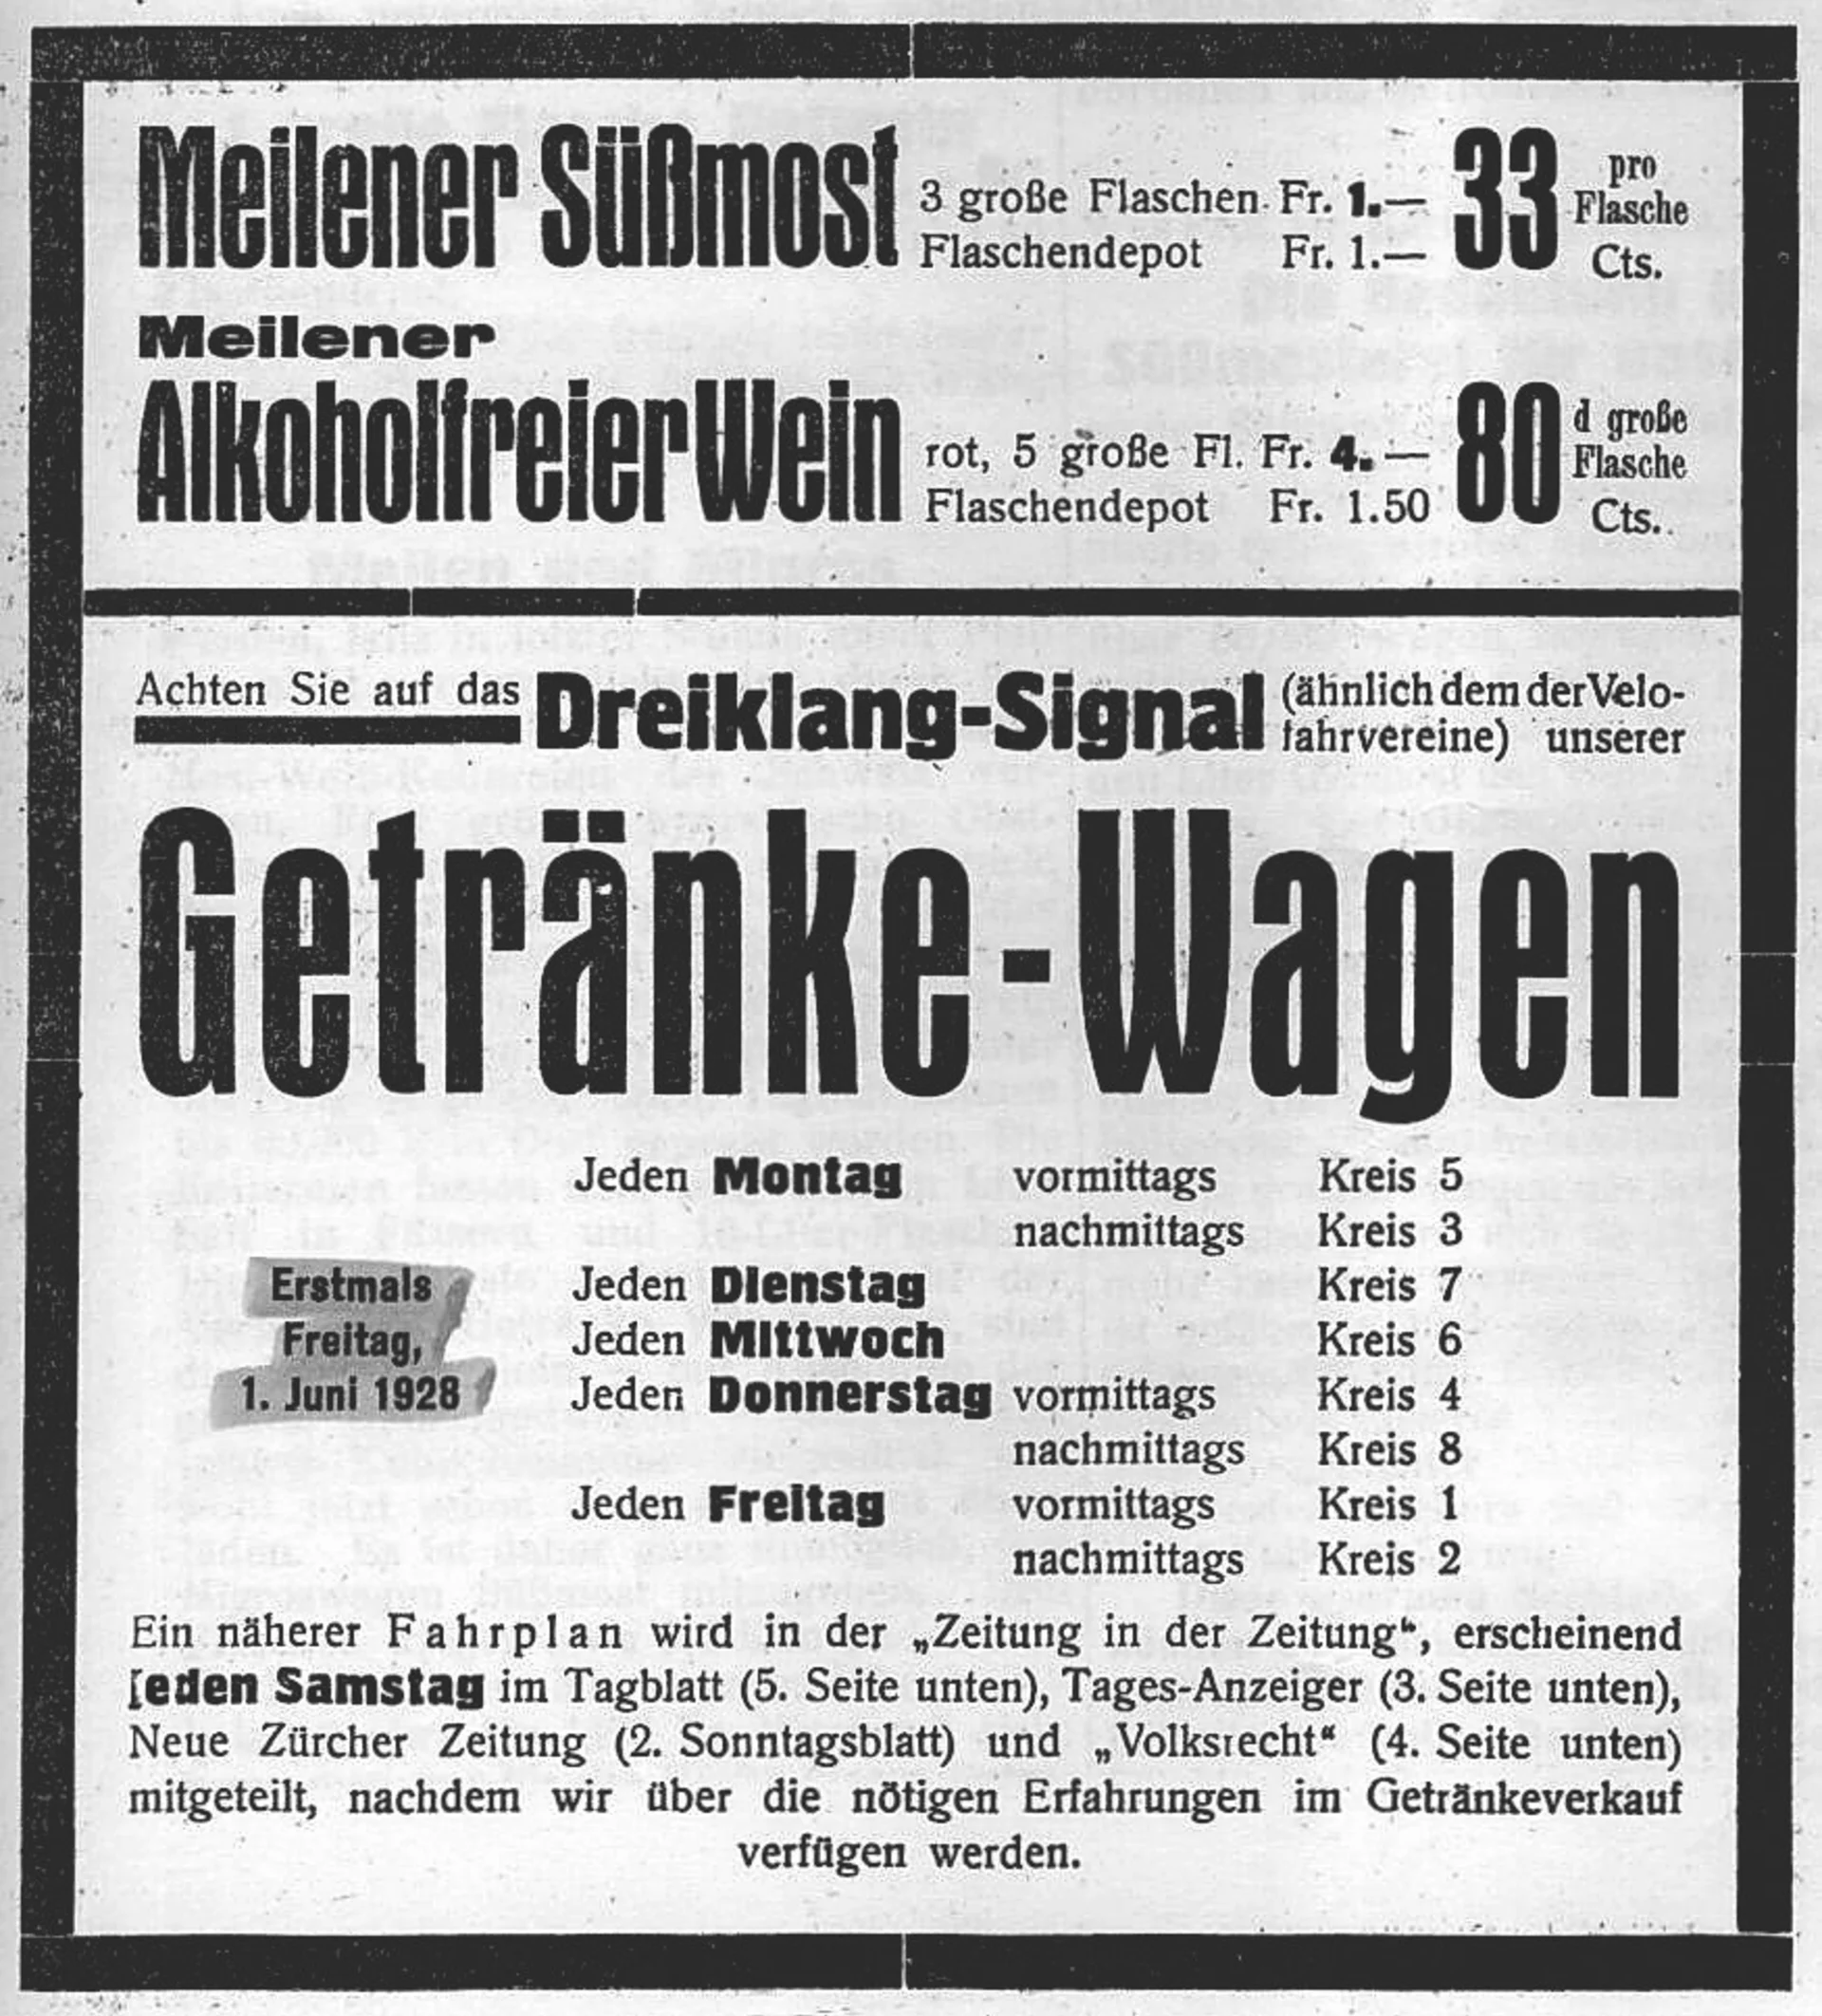 Ausschnitt aus einer Werbung aus dem Jahr 1928